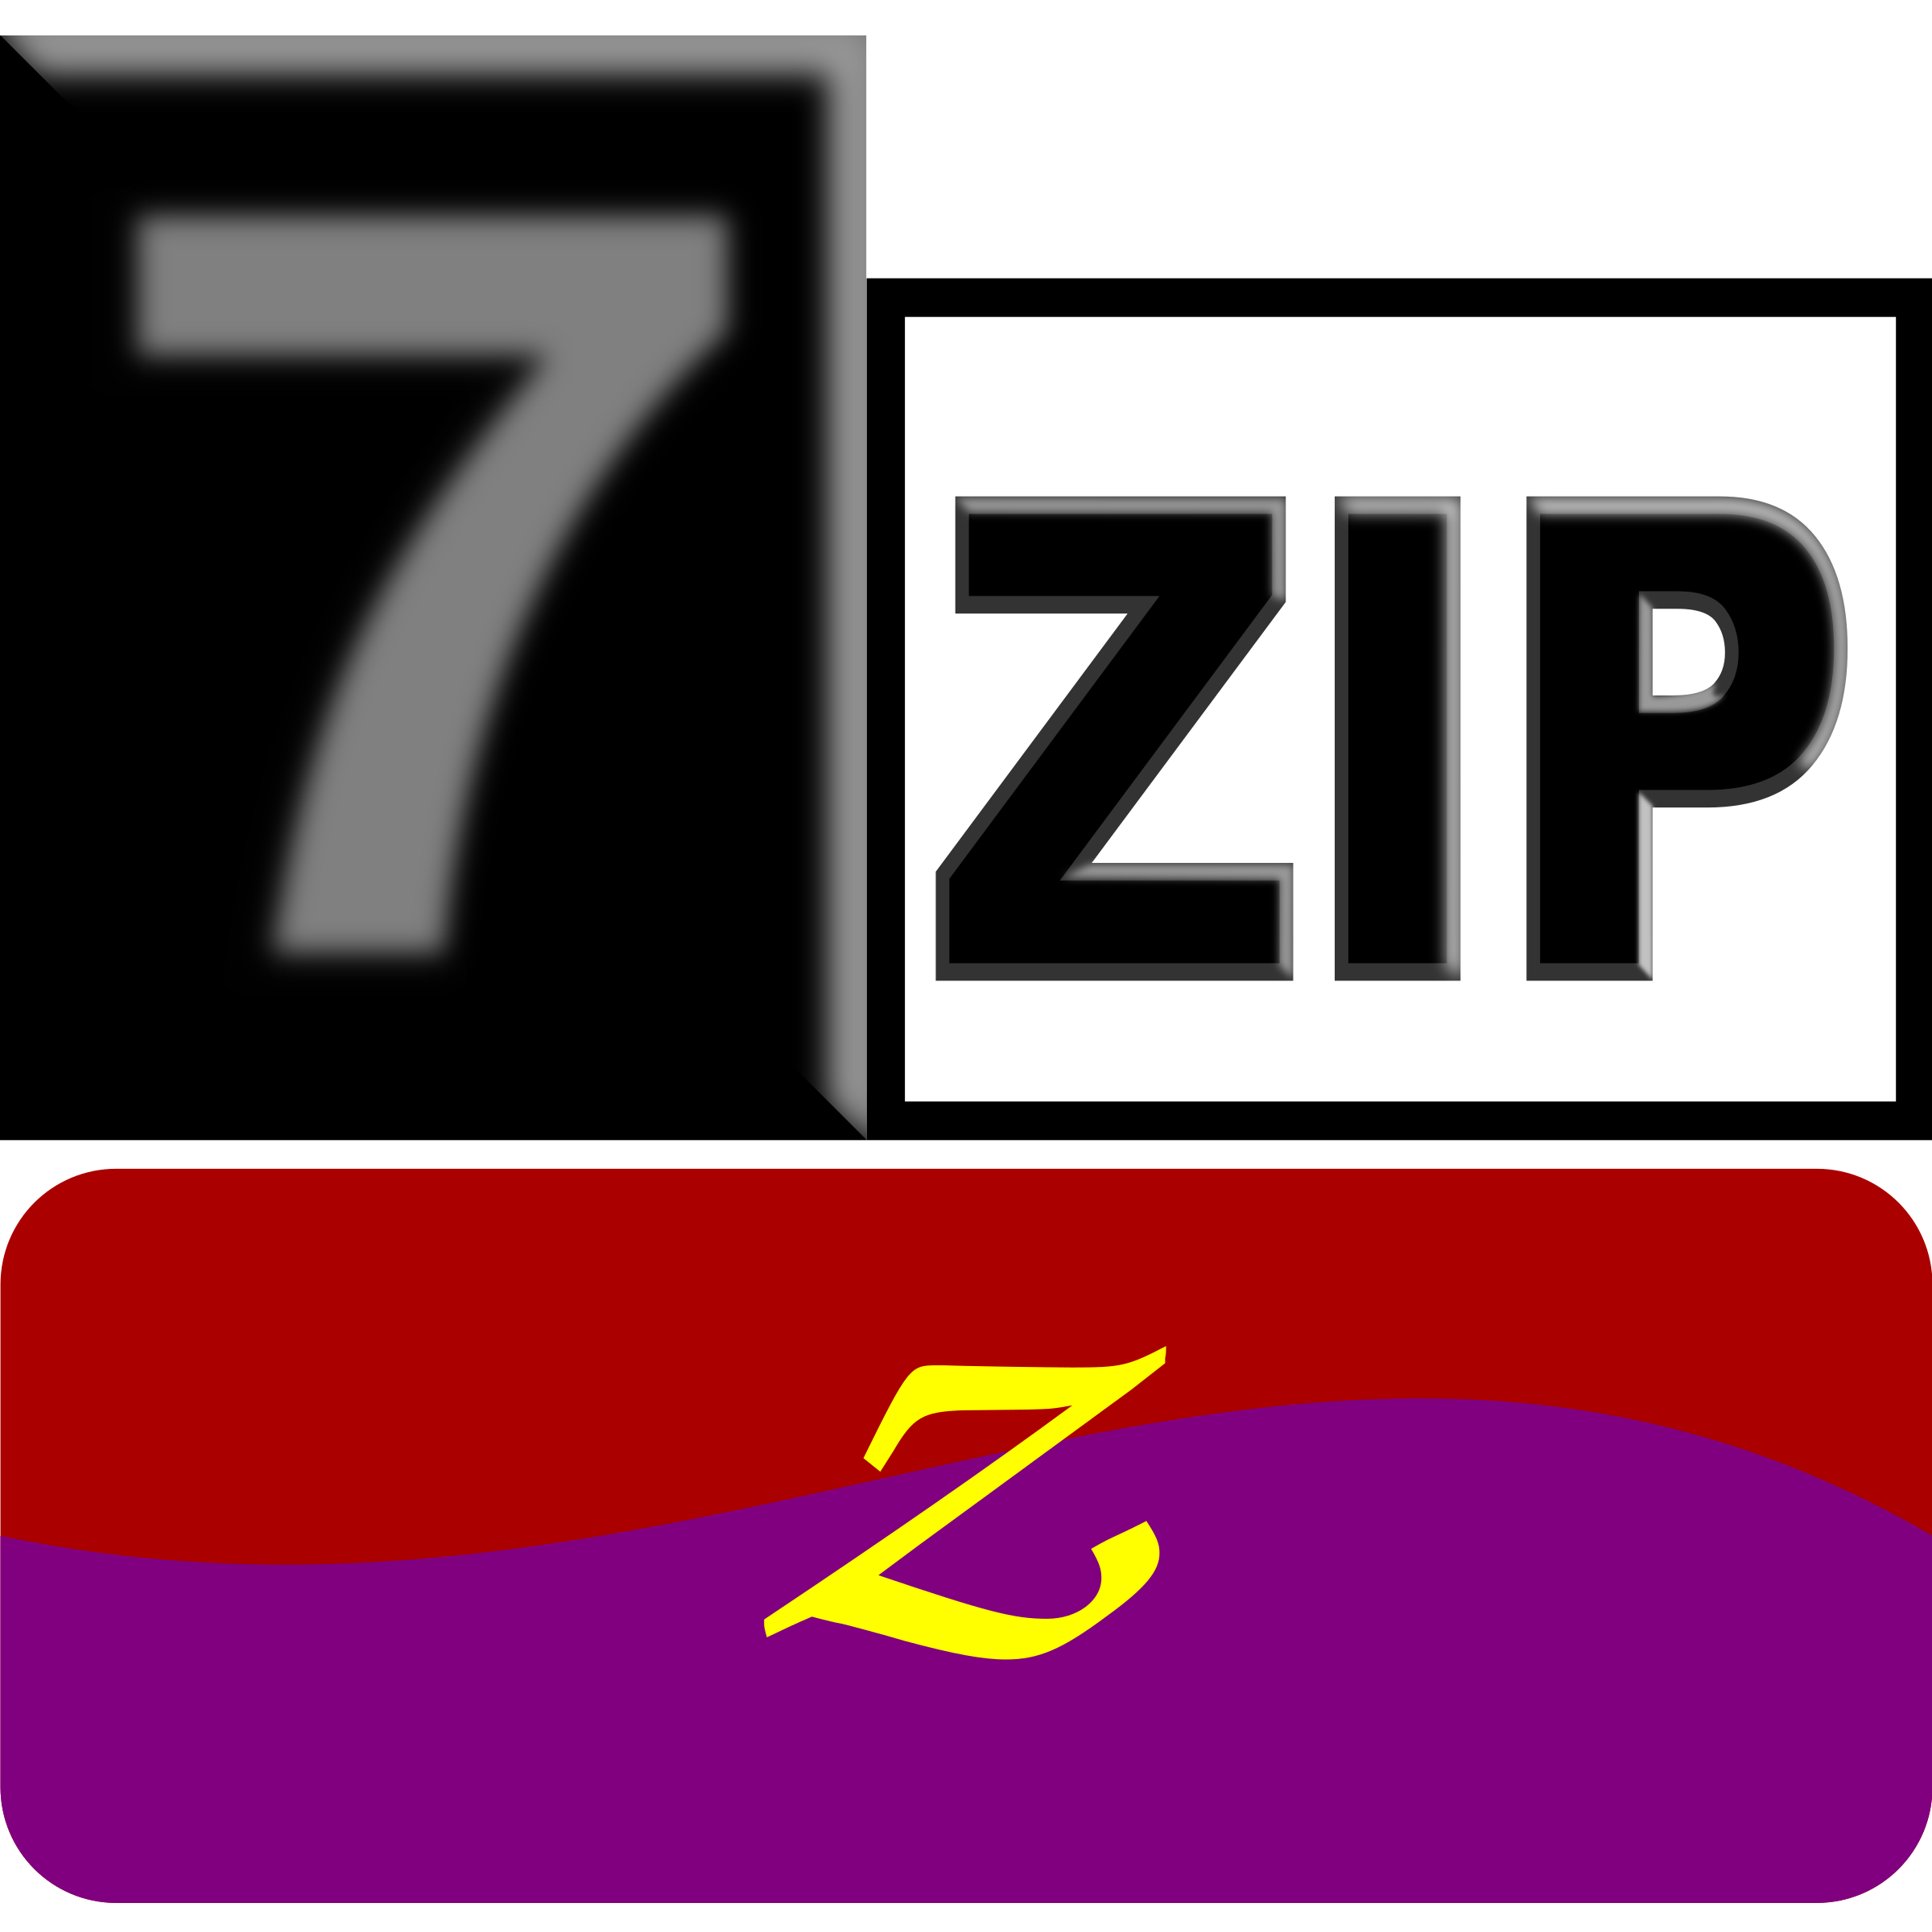 7zip file is broken